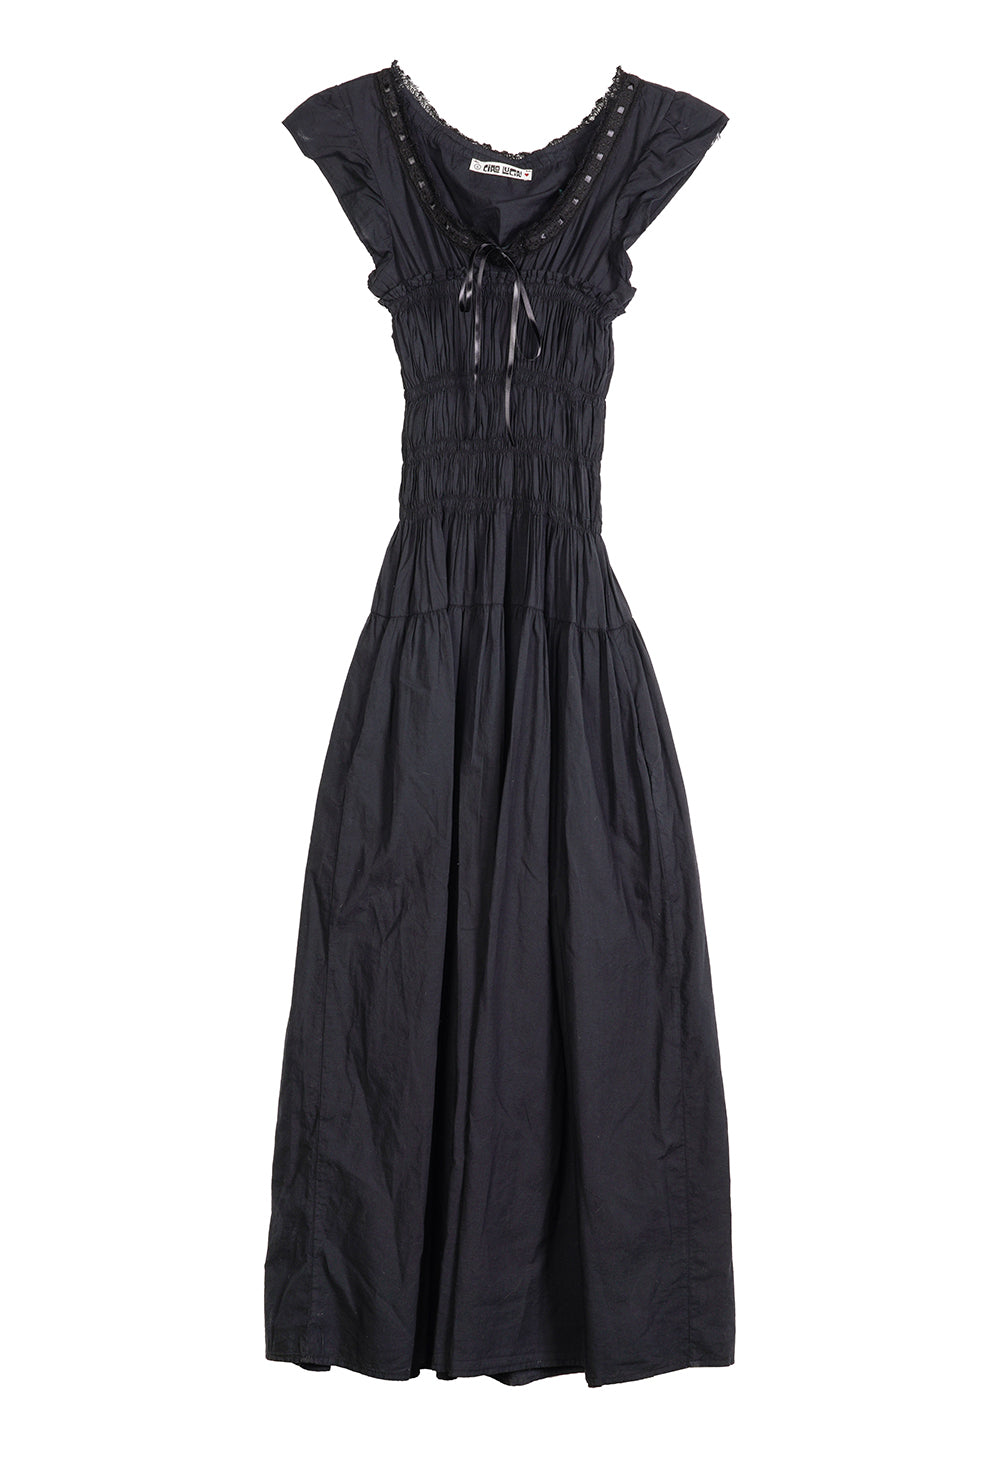 Lauretta Dress Black Cotton Voile